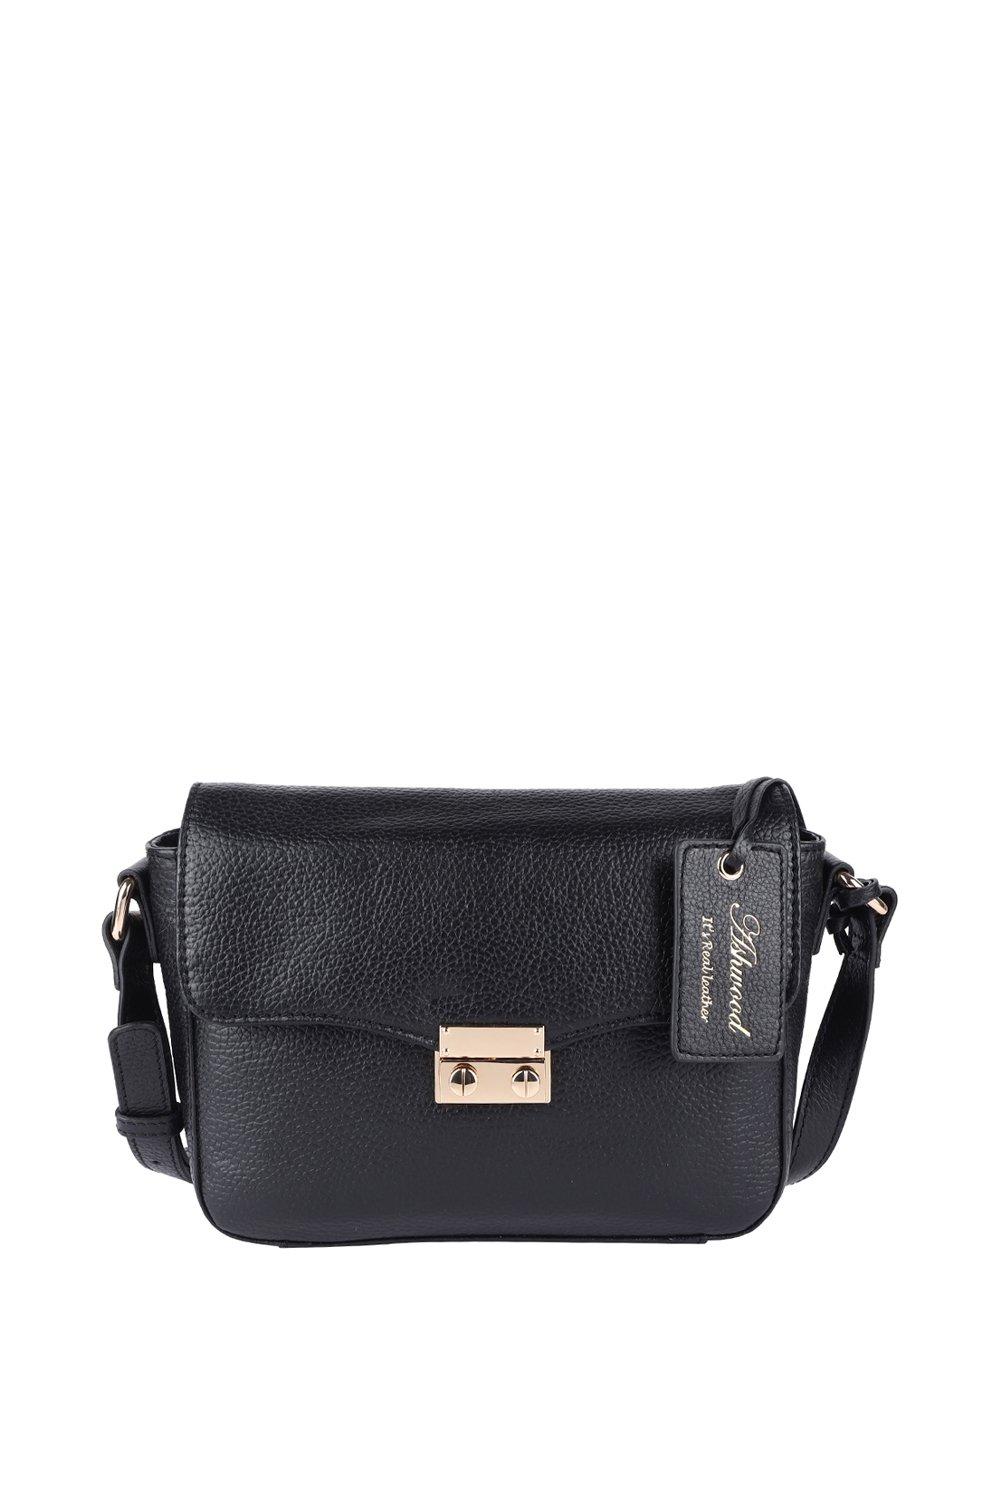 Кожаная сумка через плечо 'Elegance' Ashwood Leather, черный